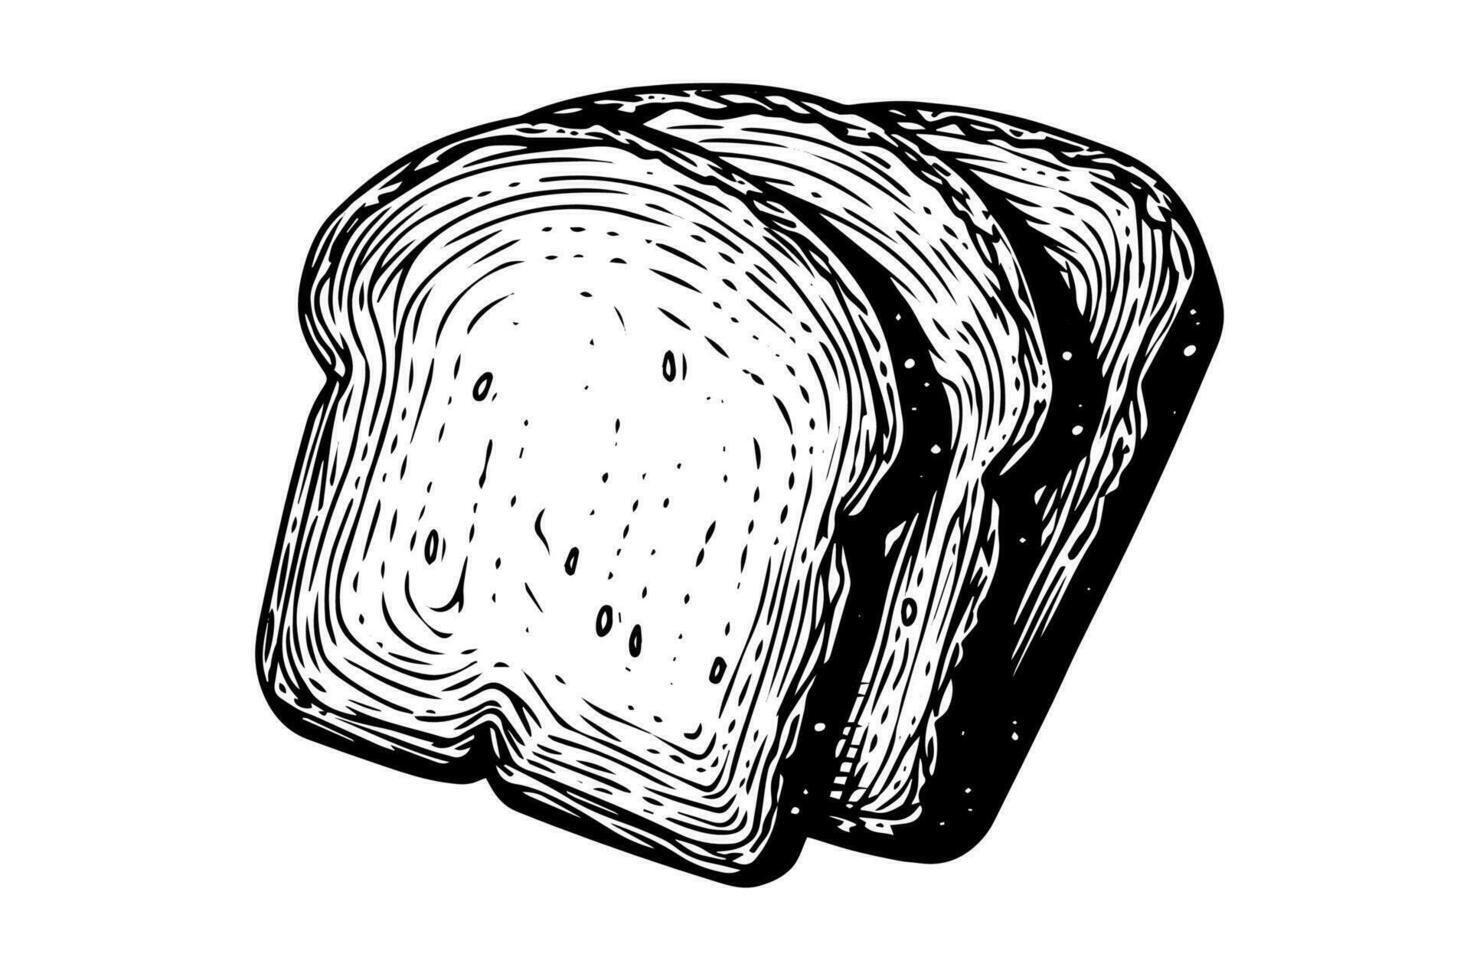 rostat bröd skivor skiss. bröd gravyr i hand dragen stil vektor illustration.